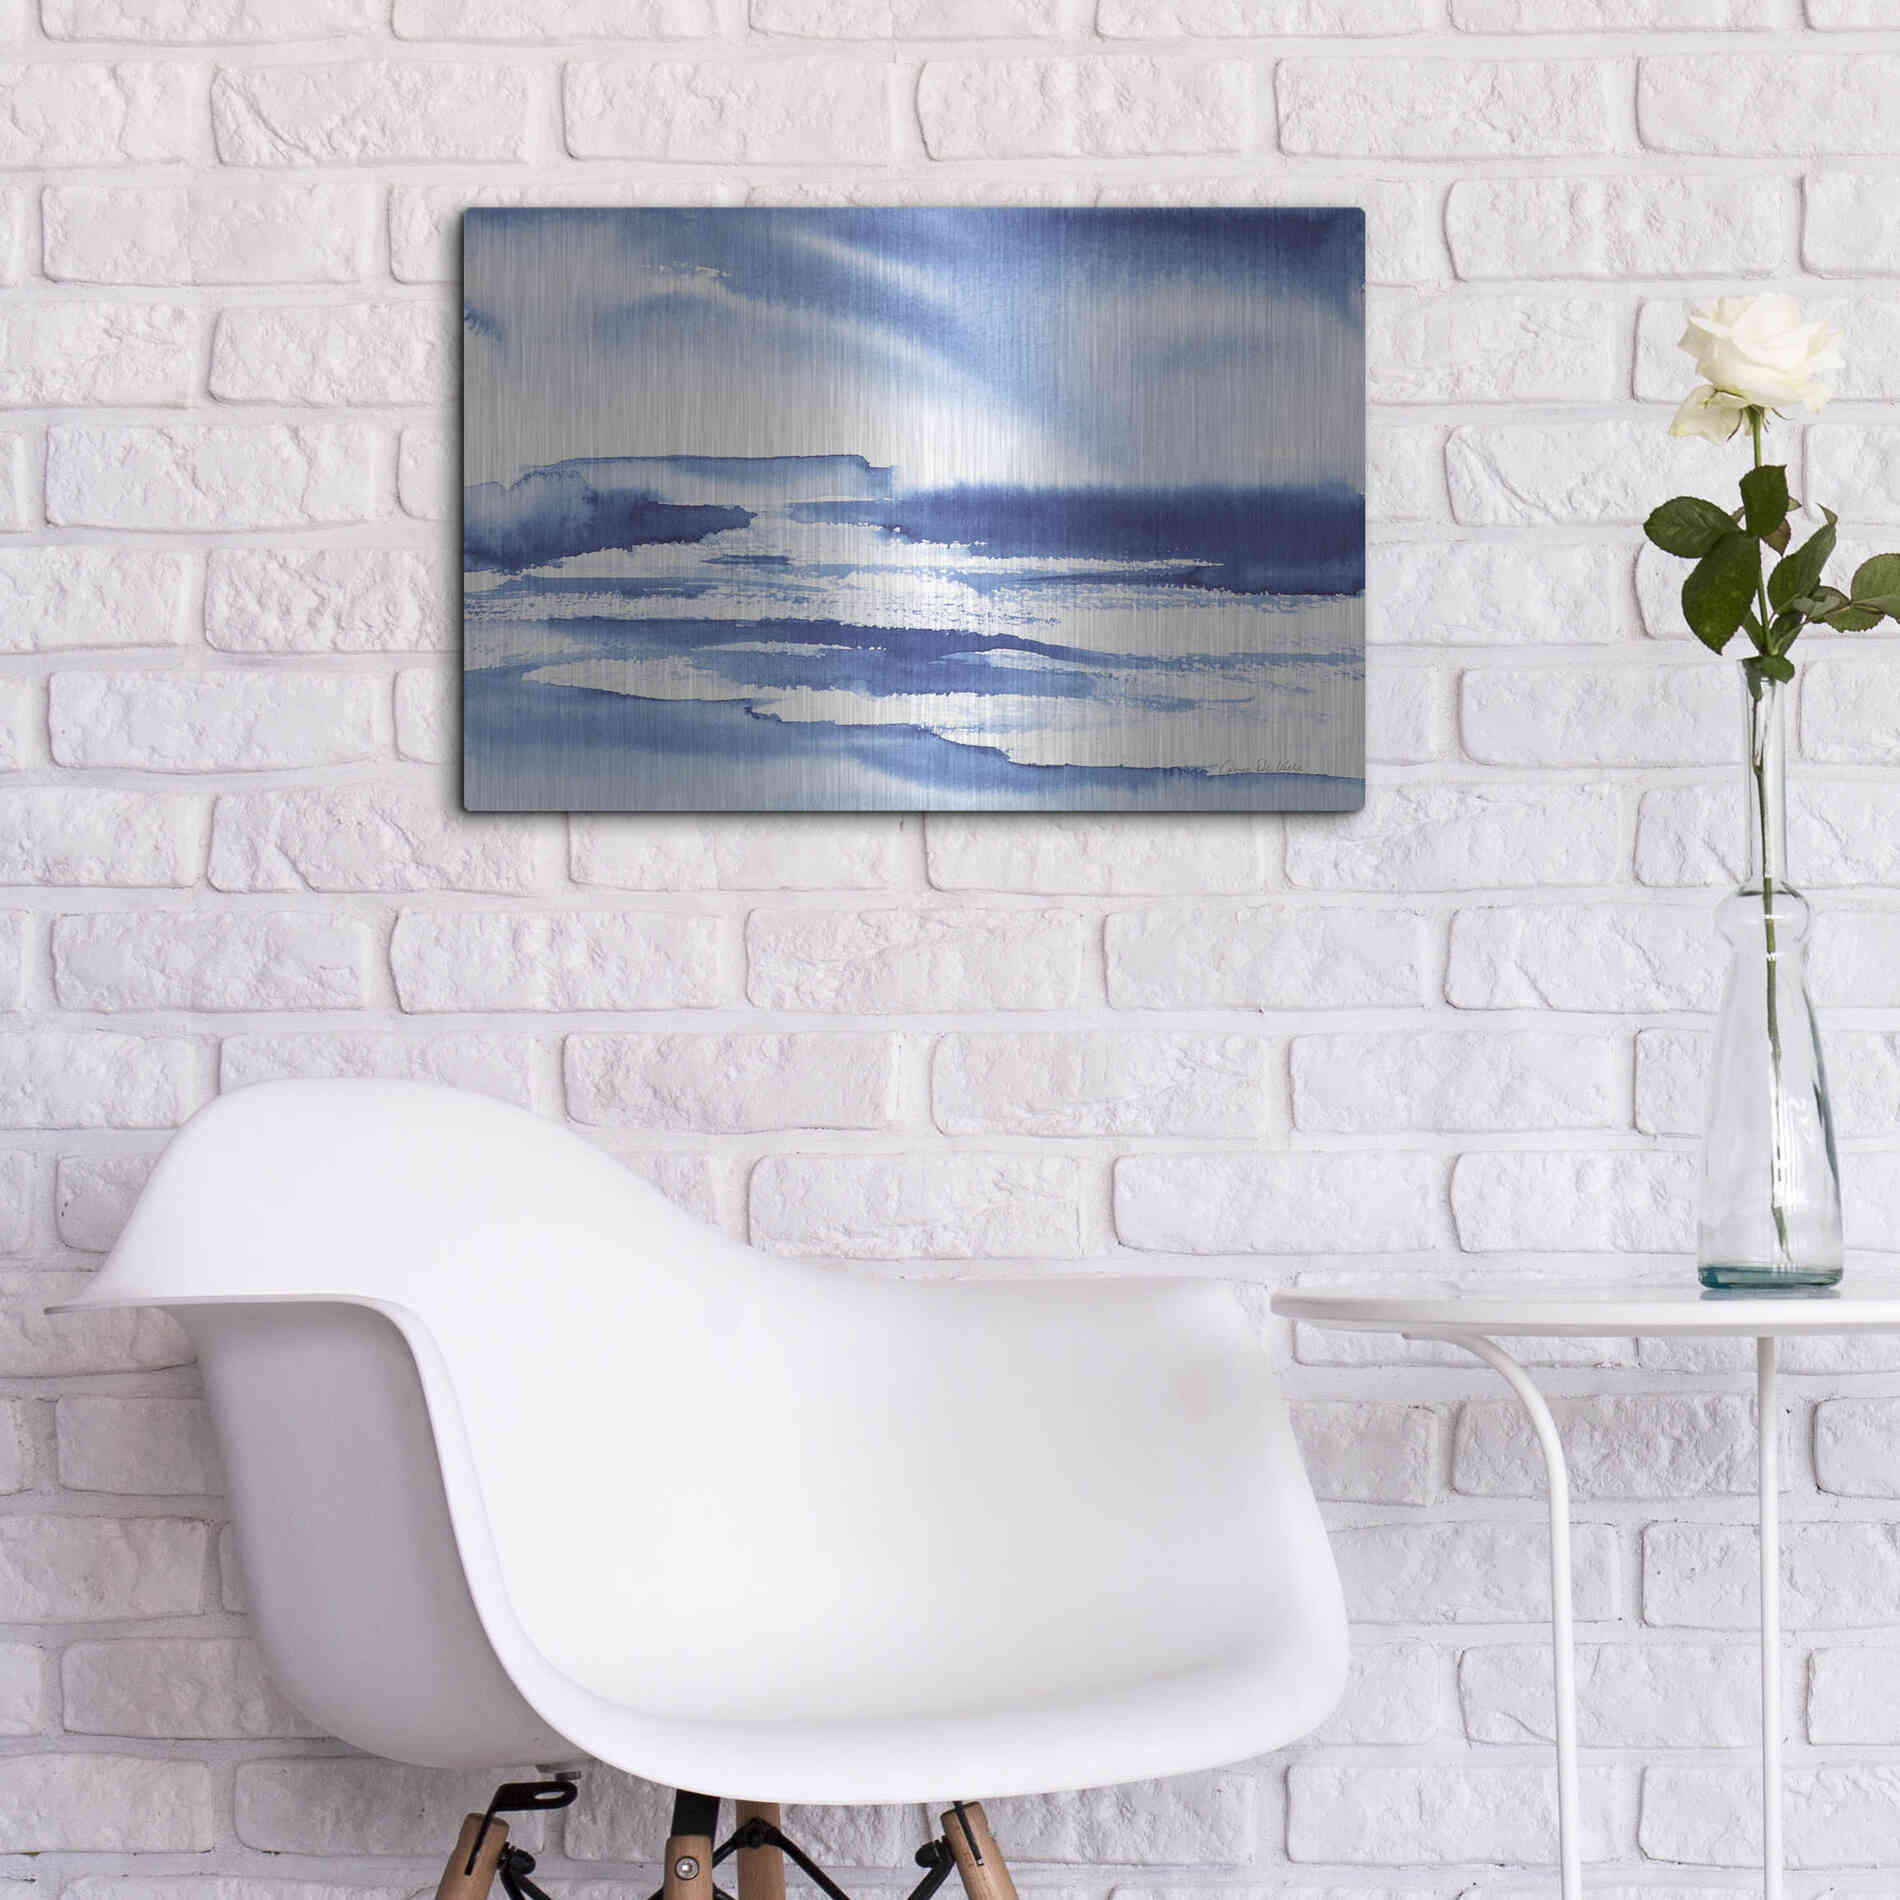 Luxe Metal Art 'Ocean Blue I' by Alan Majchrowicz, Metal Wall Art,24x16